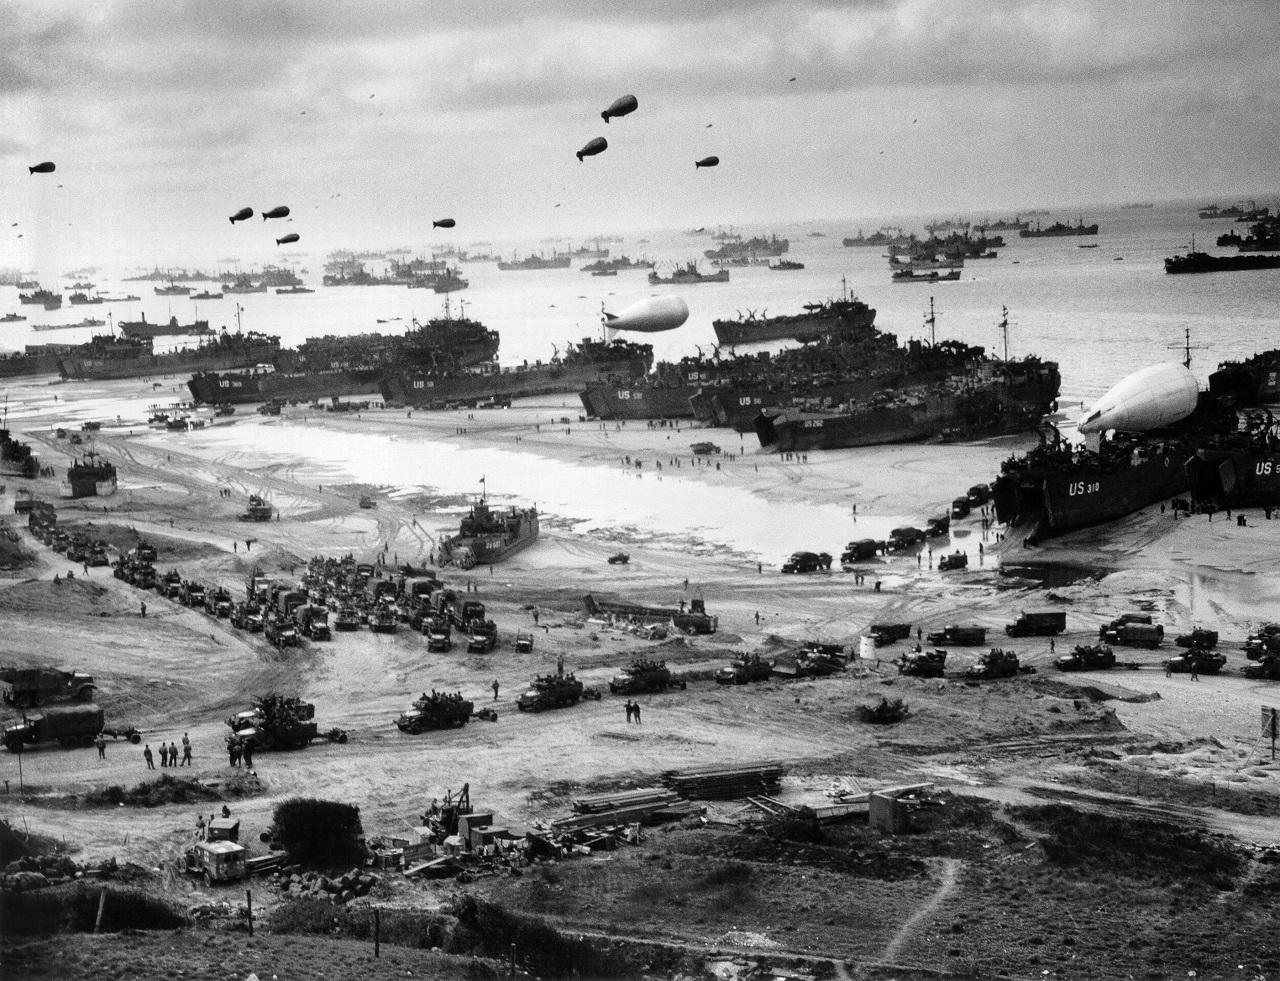 Высадка 1944 года. Нормандия 6 июня 1944. Высадка в Нормандии. Высадка десанта в Нормандии в 1944. Открытие второго фронта в Нормандии 1944.